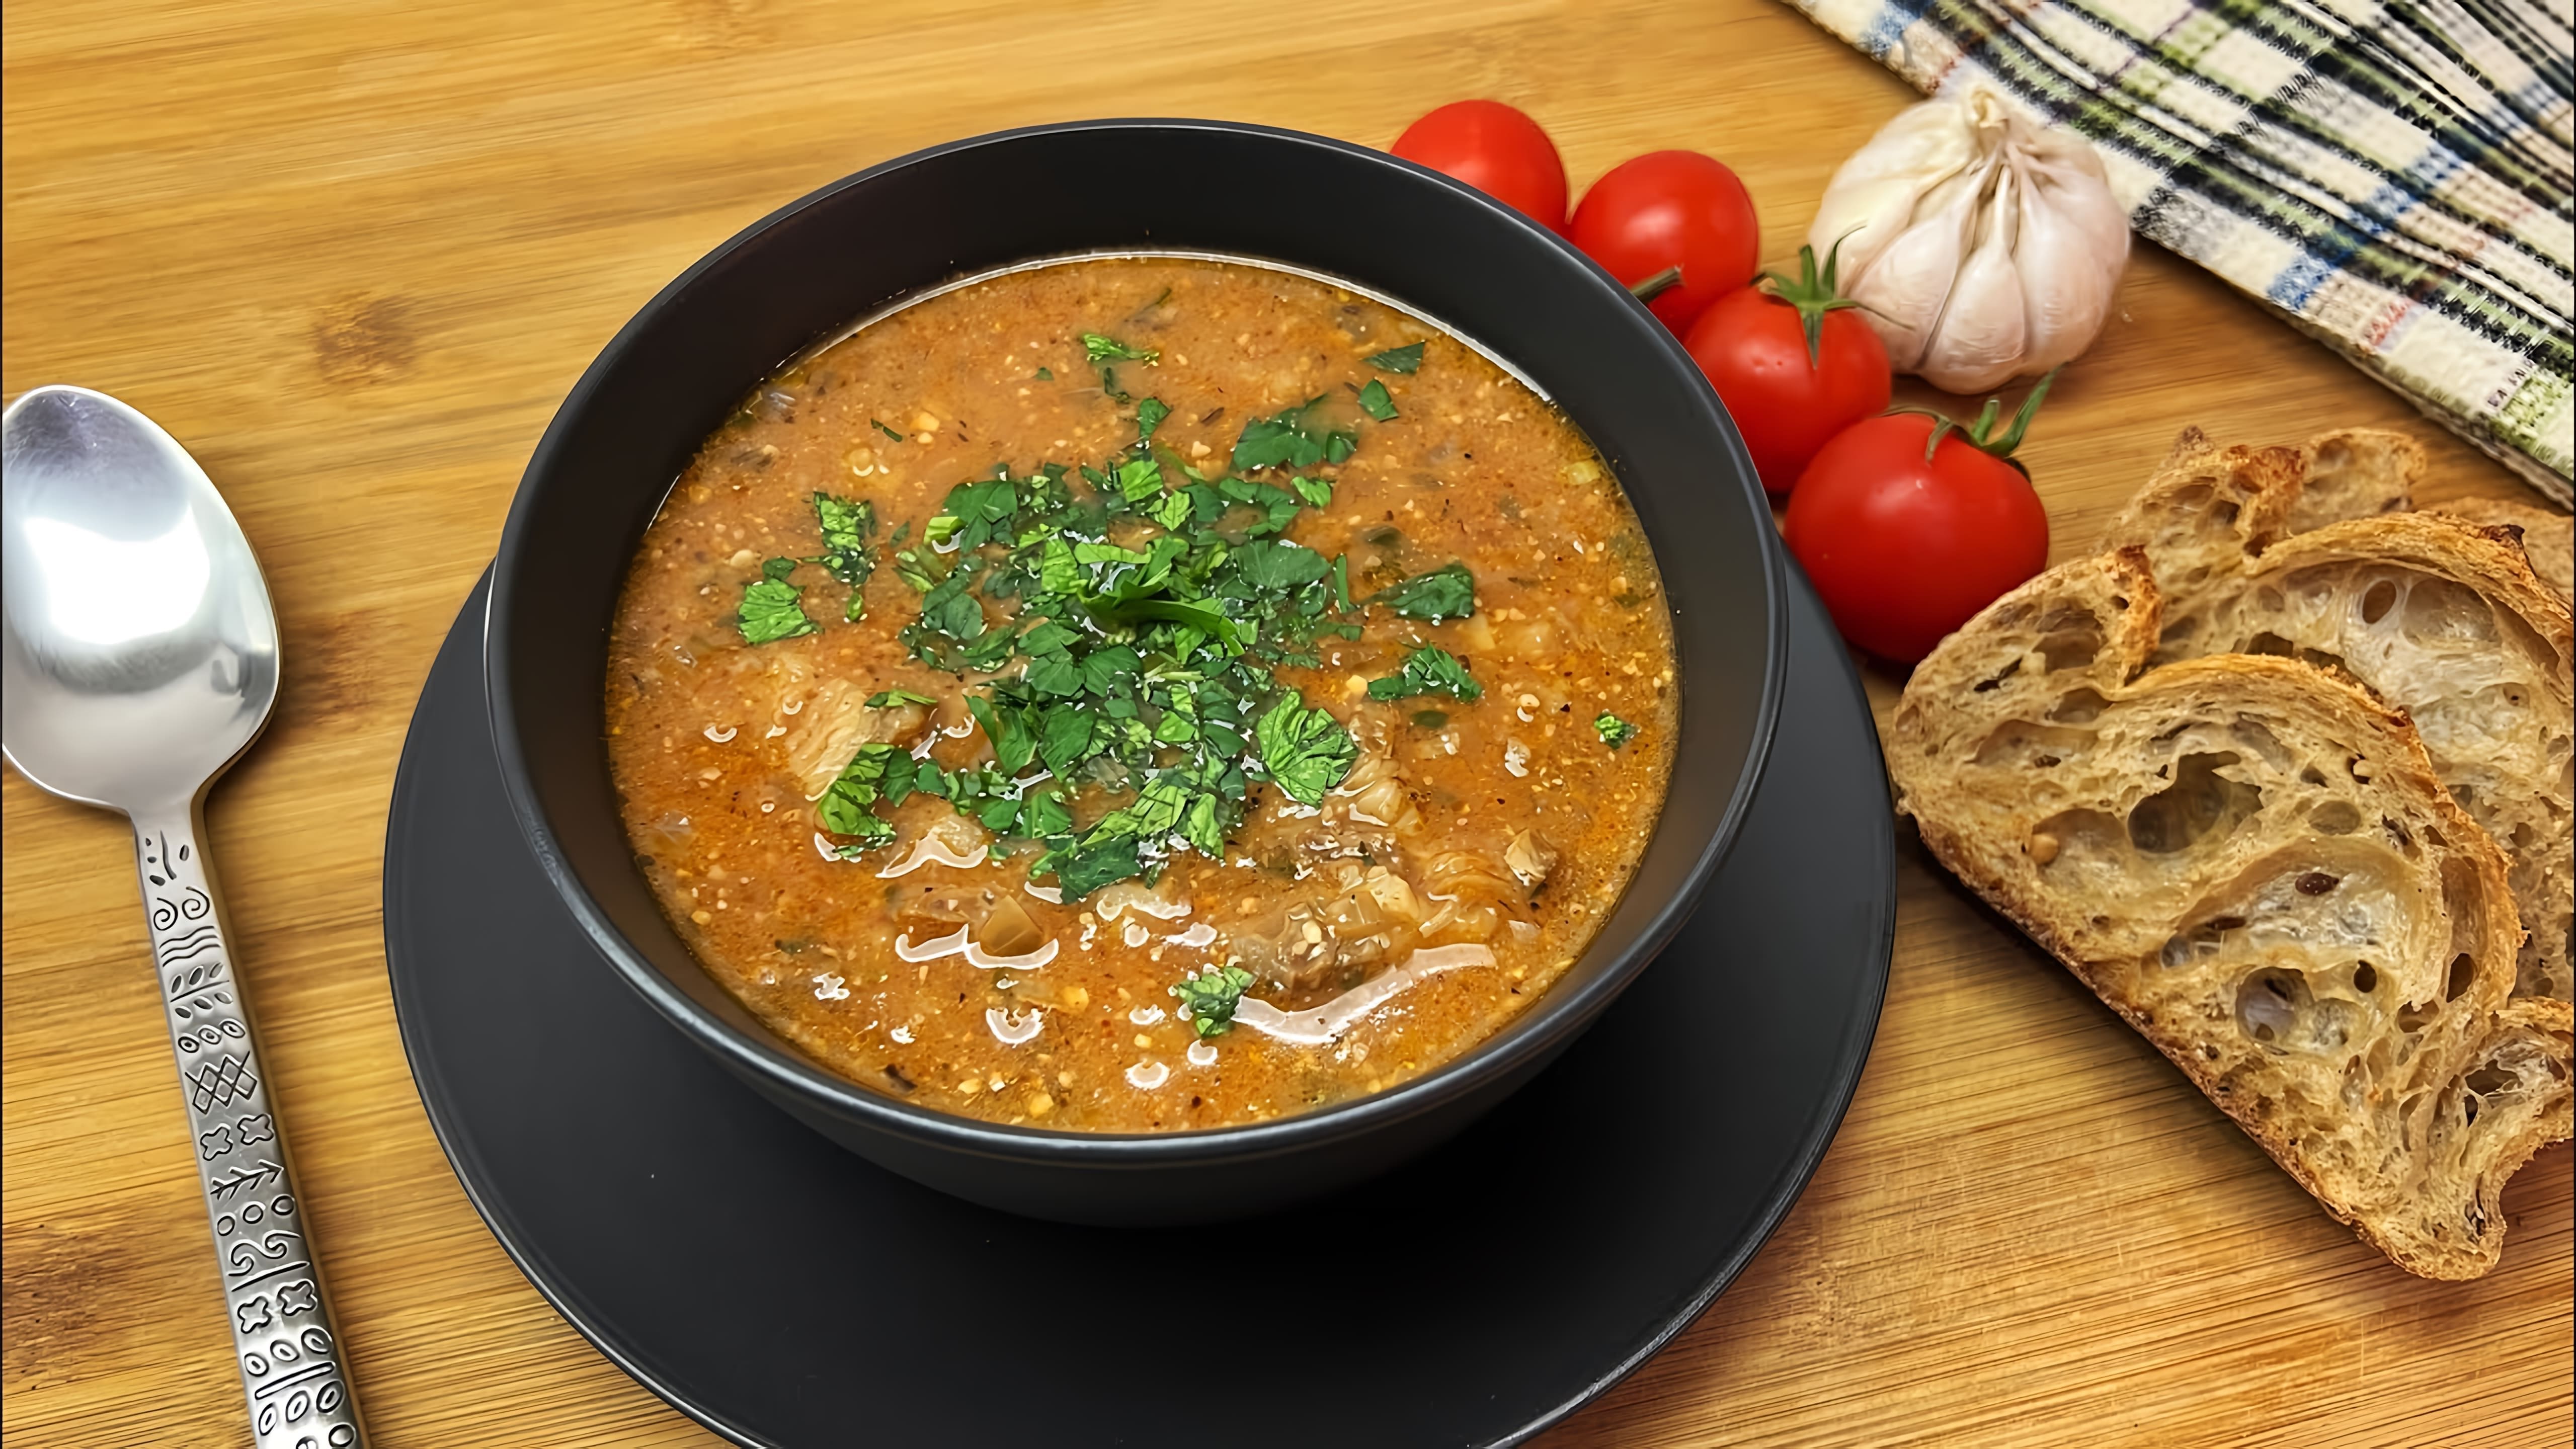 Суп Харчо - простой домашний рецепт

В этом видео-ролике я покажу, как приготовить вкусный и ароматный суп Харчо в домашних условиях